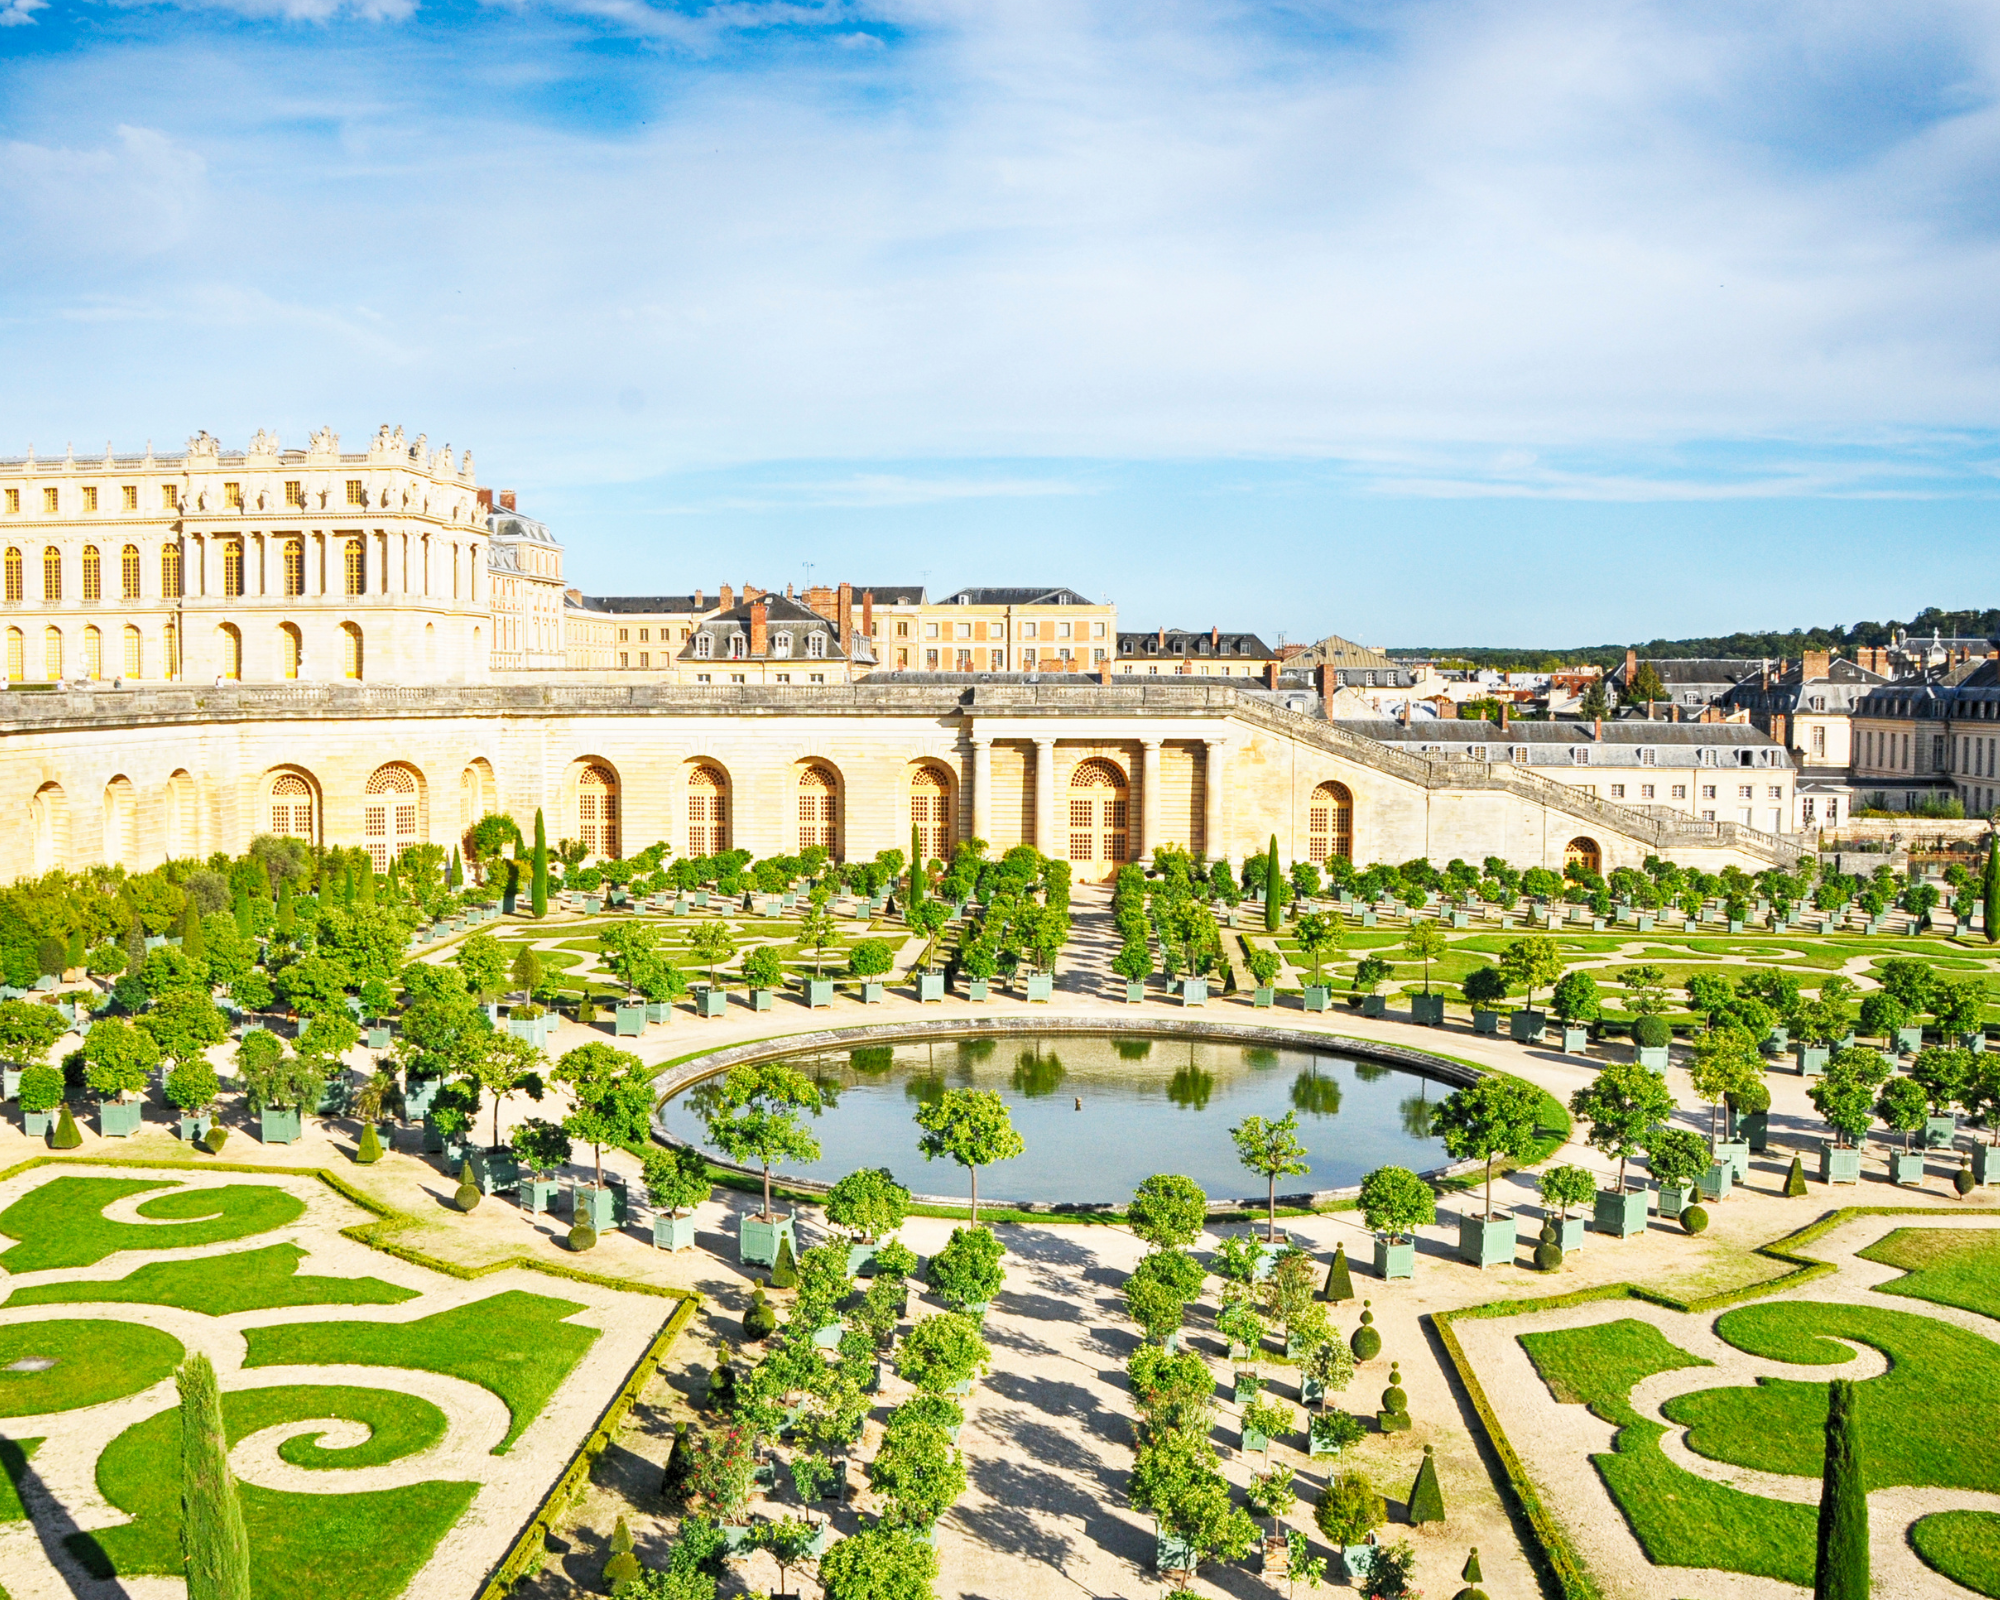 The Palace of Versailles Paris